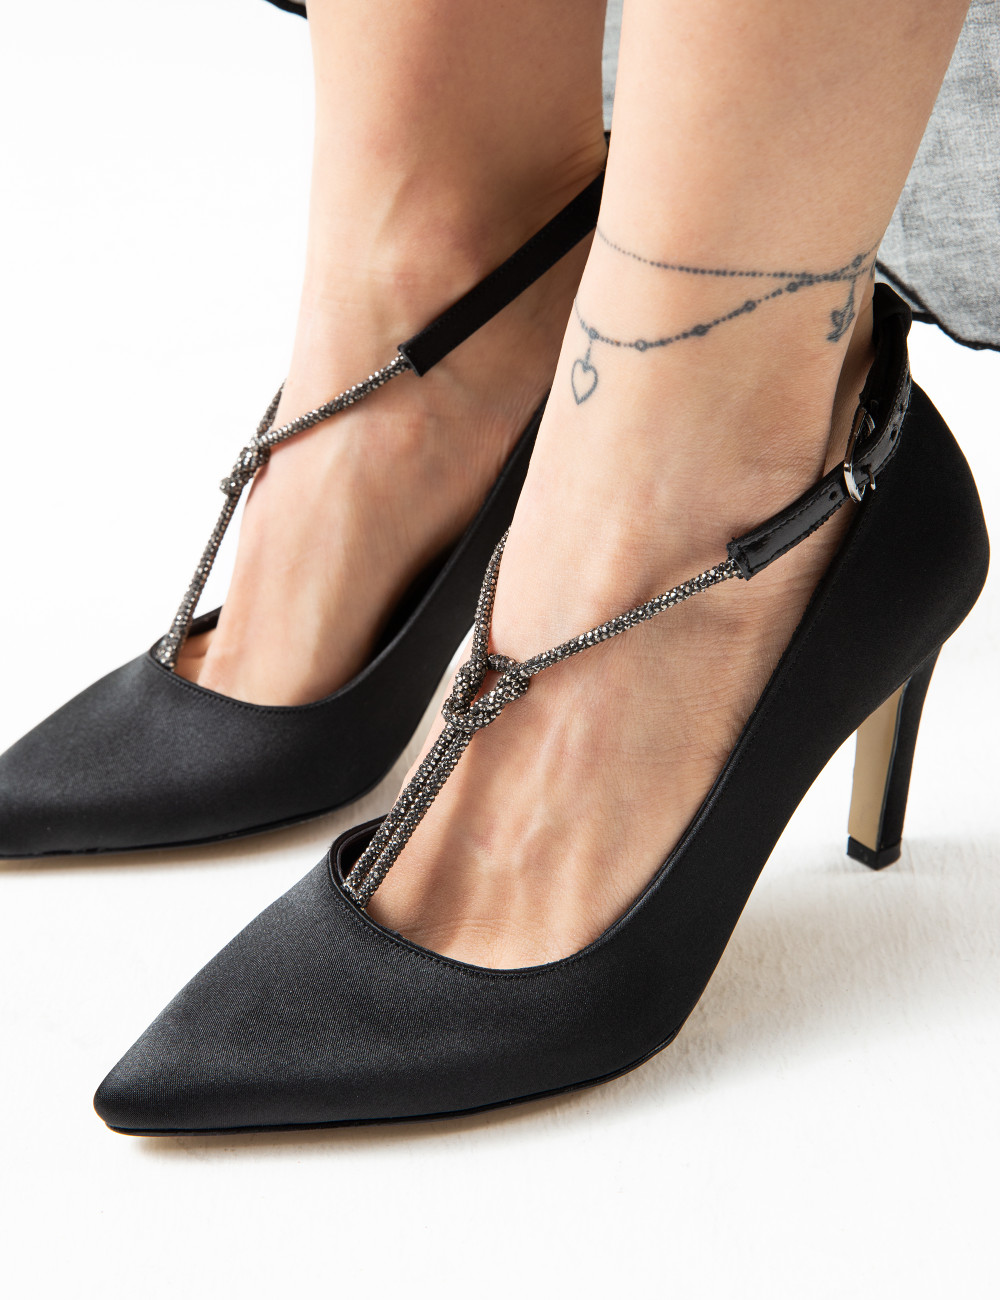 Siyah Stiletto Kadın Topuklu Ayakkabı - K0075ZSYHM01